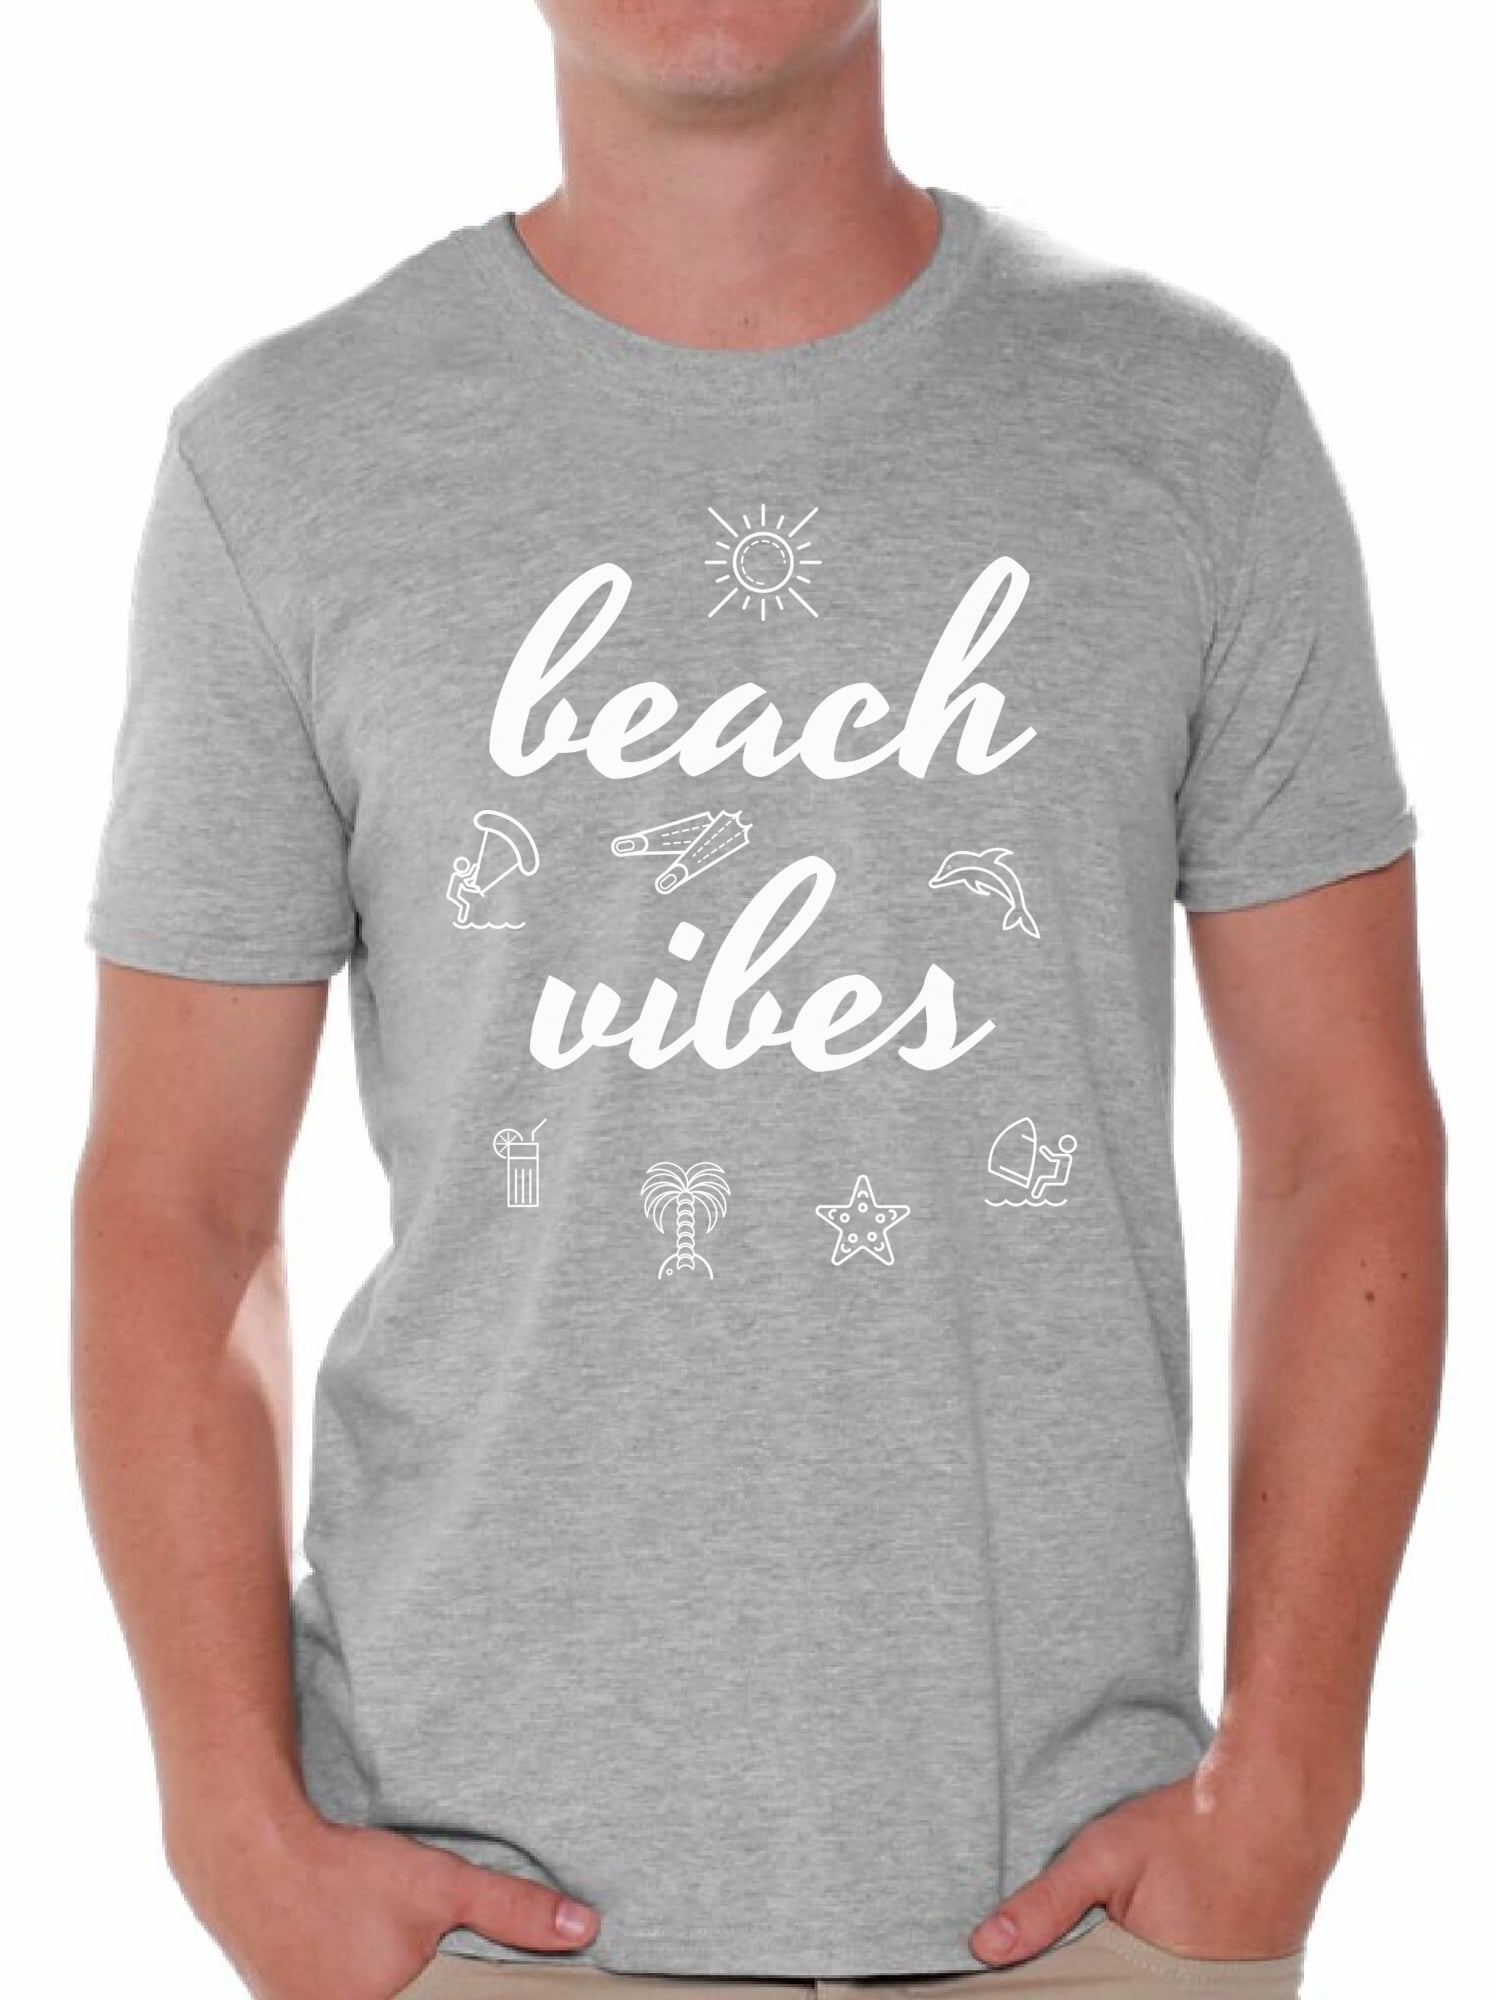 Funny Shirt Summer Shirt Keep it Cool Shirt Vacation Shirt Beach Shirt Summer Shirts For Women Vacay Mode Beach Shirts For Women